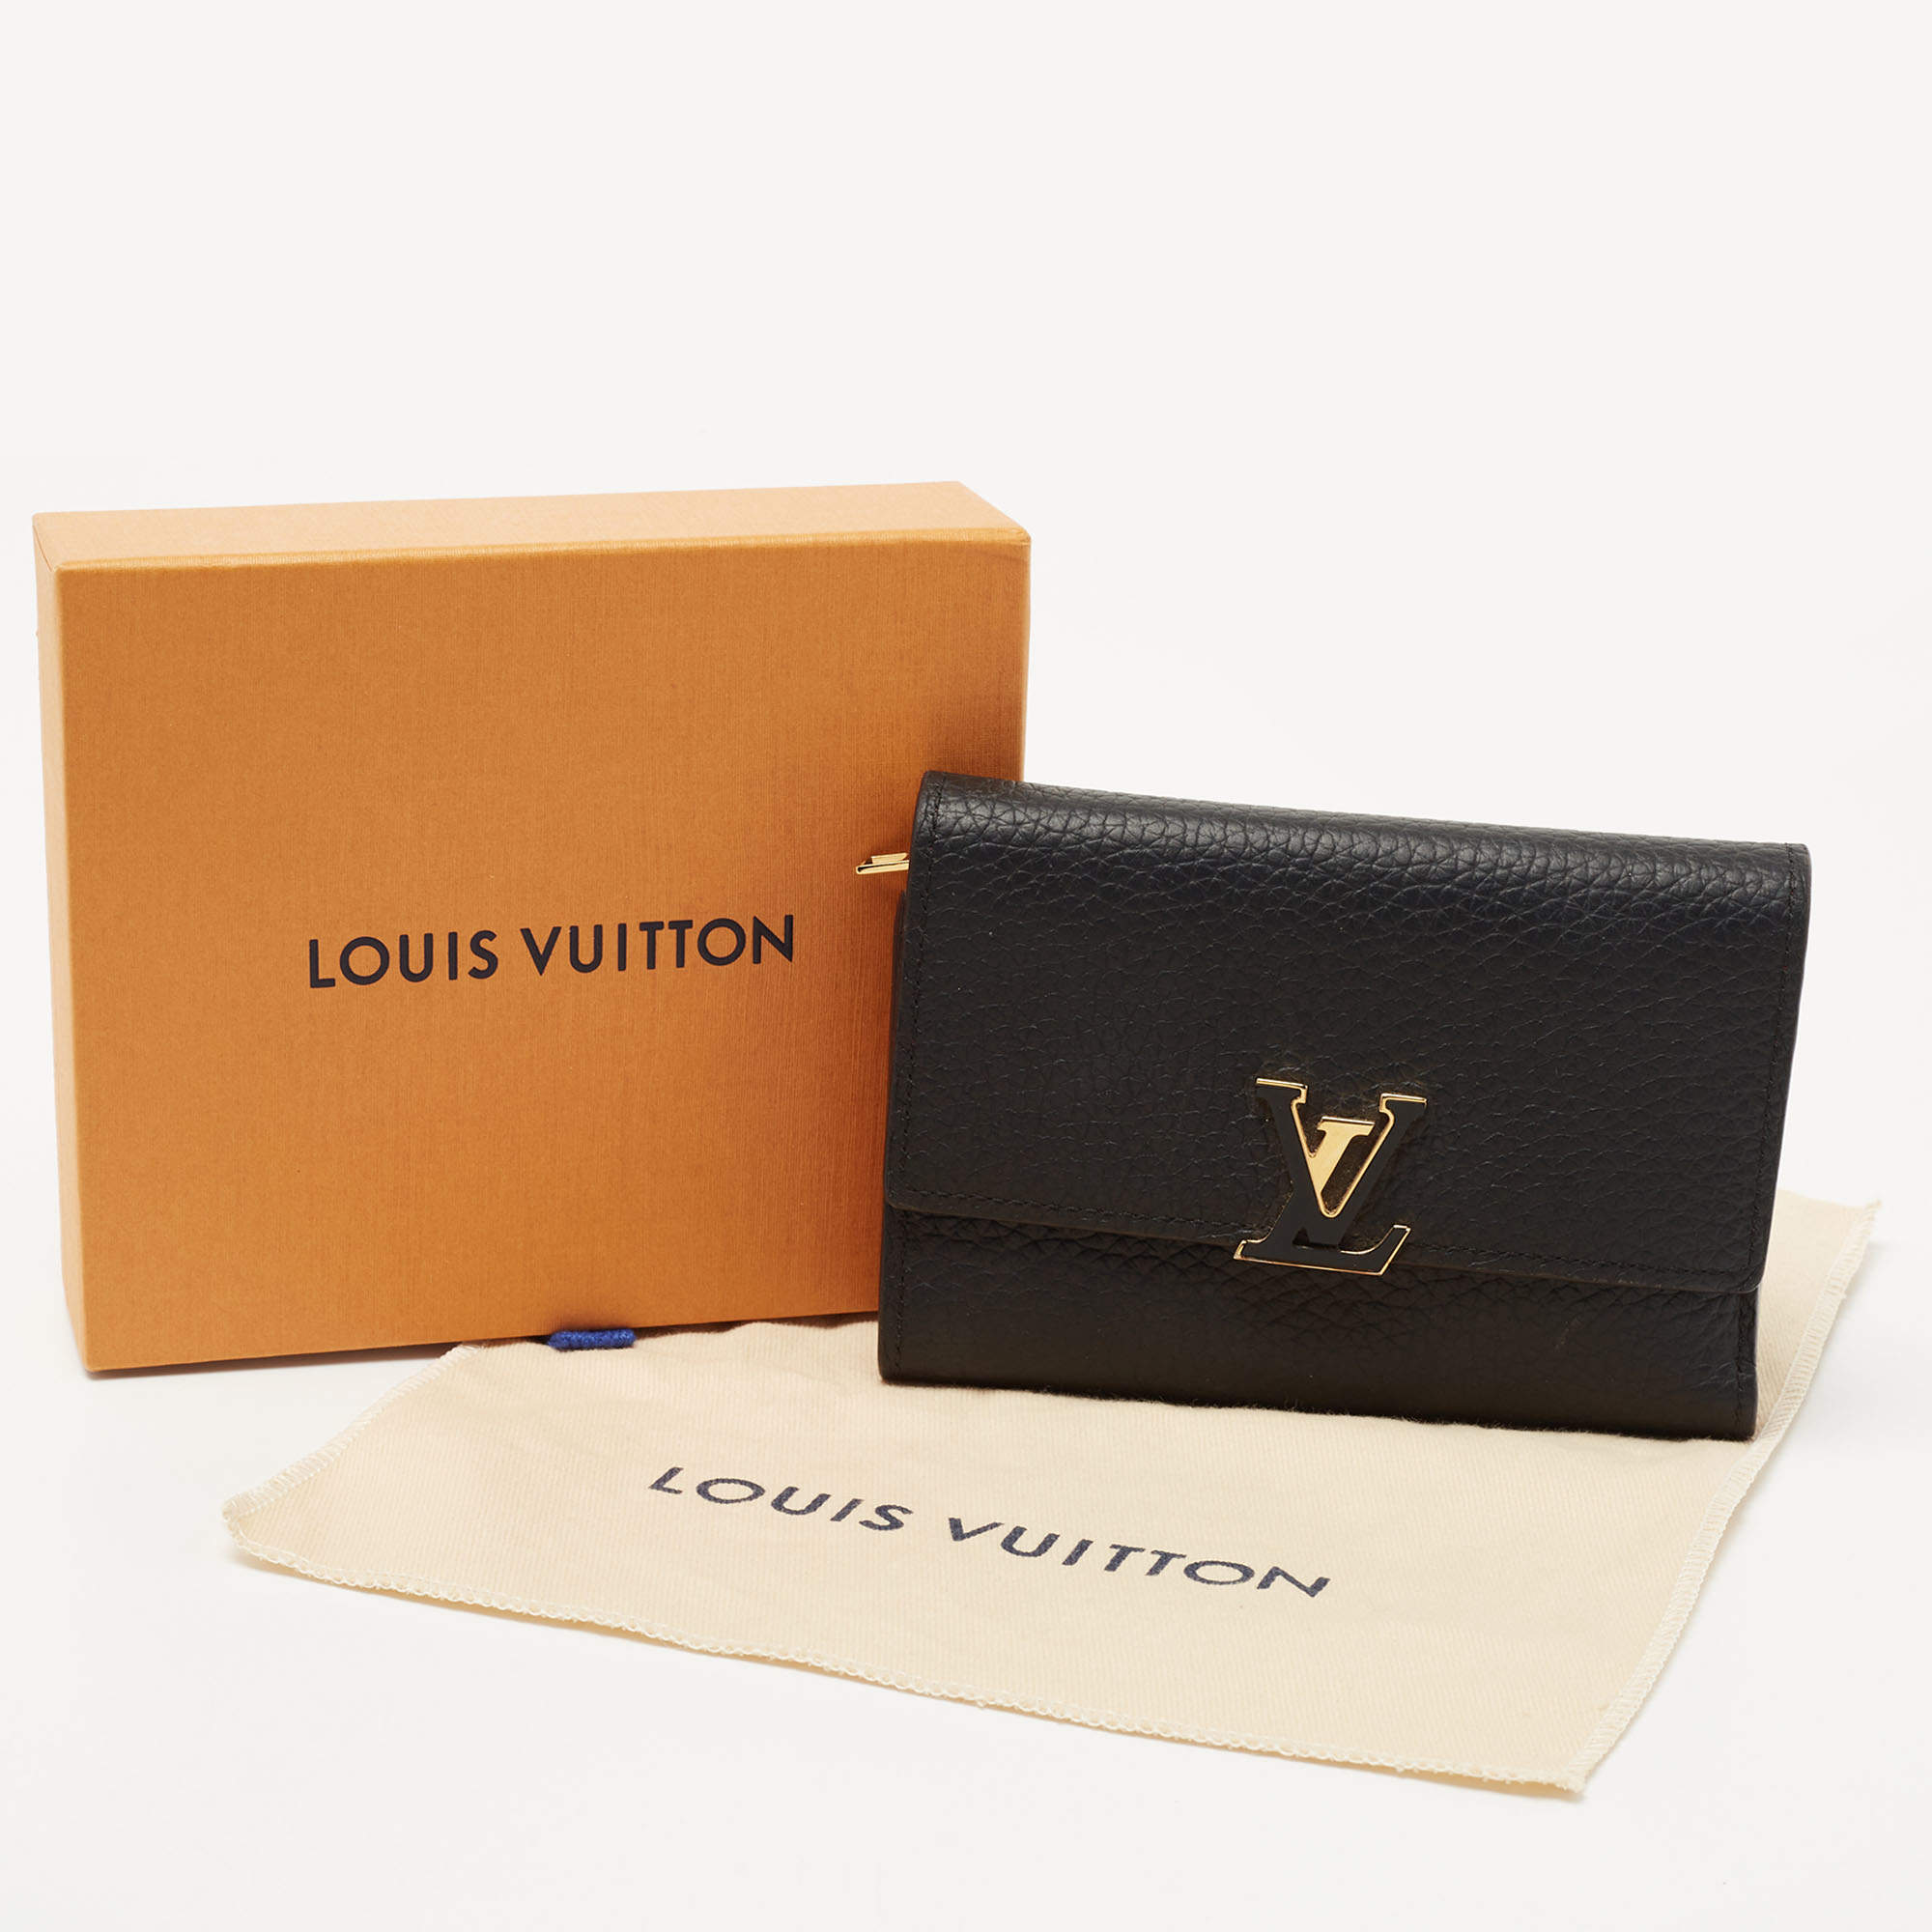 LOUIS VUITTON Taurillon Capucines XS Wallet Black 1206141